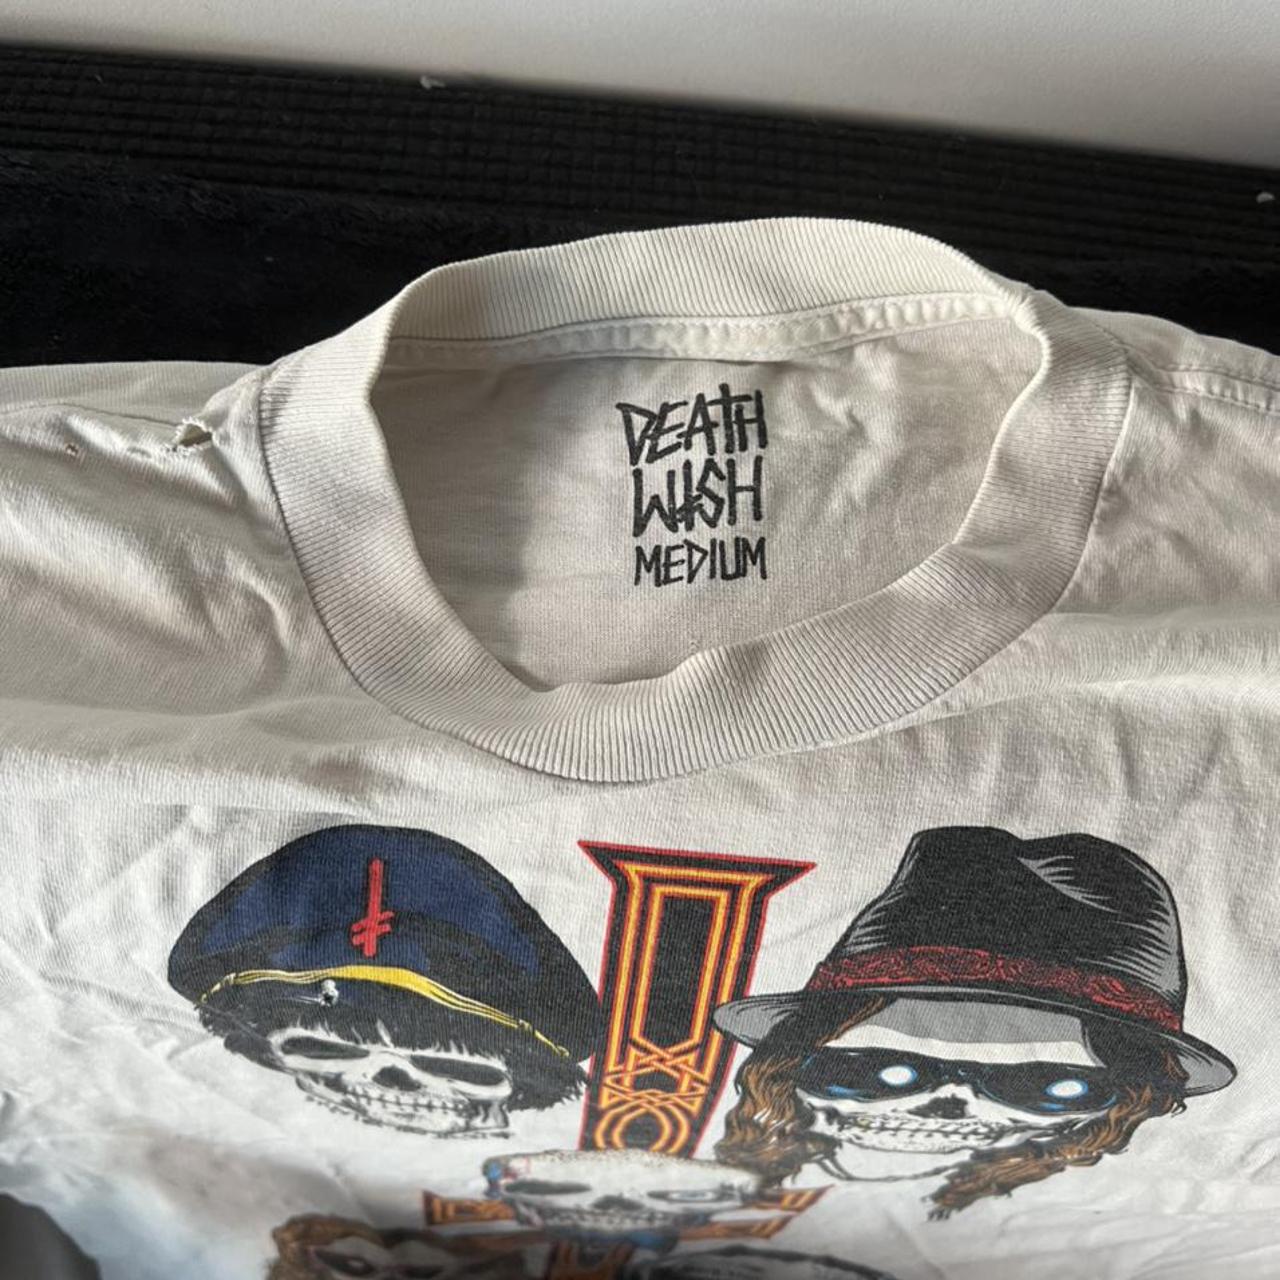 Product Image 2 - Deathwish skateboards used t shirt,